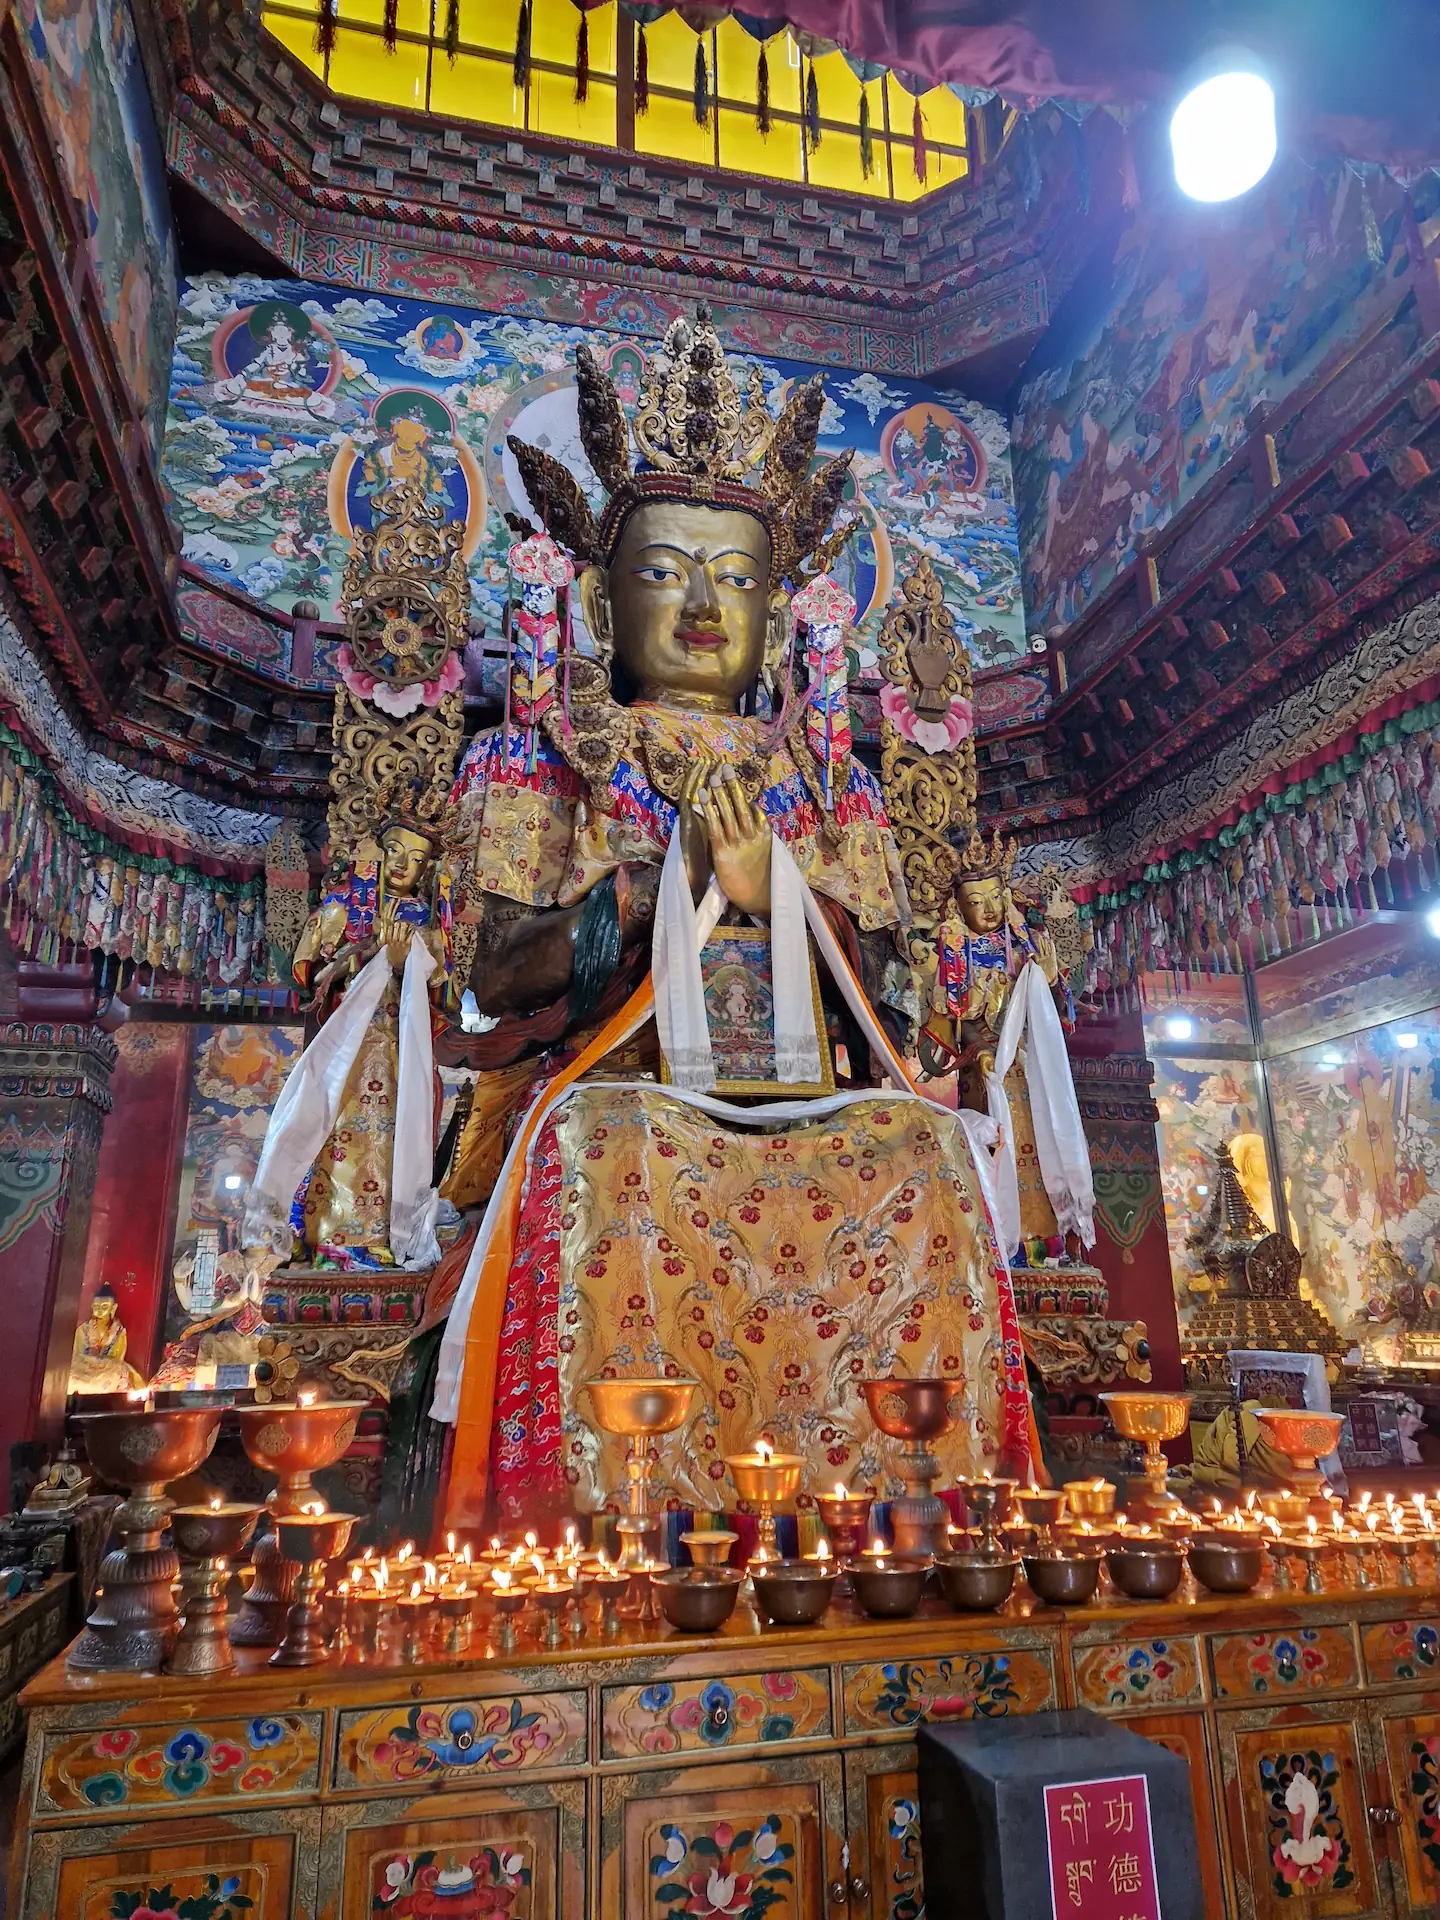 Des dizaines de petites bougies allumées devant une grande statue colorée au milieu du temple